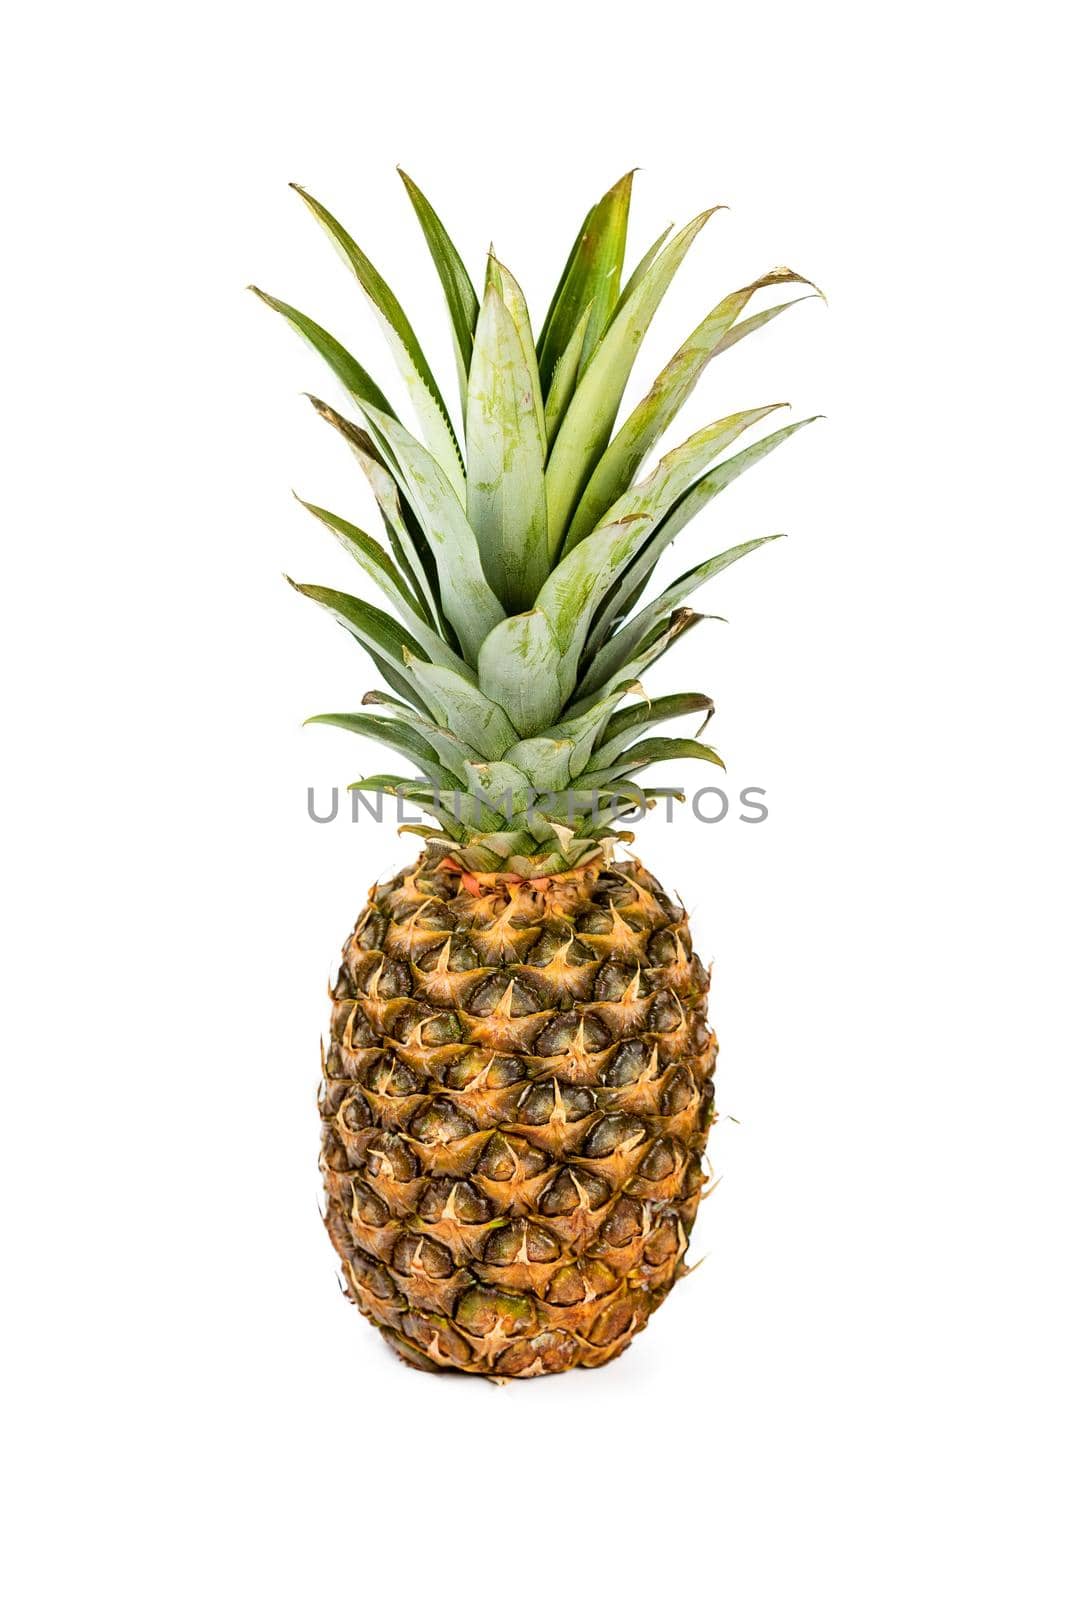 .Fresh pineapple fruit isolated on white background by galinasharapova